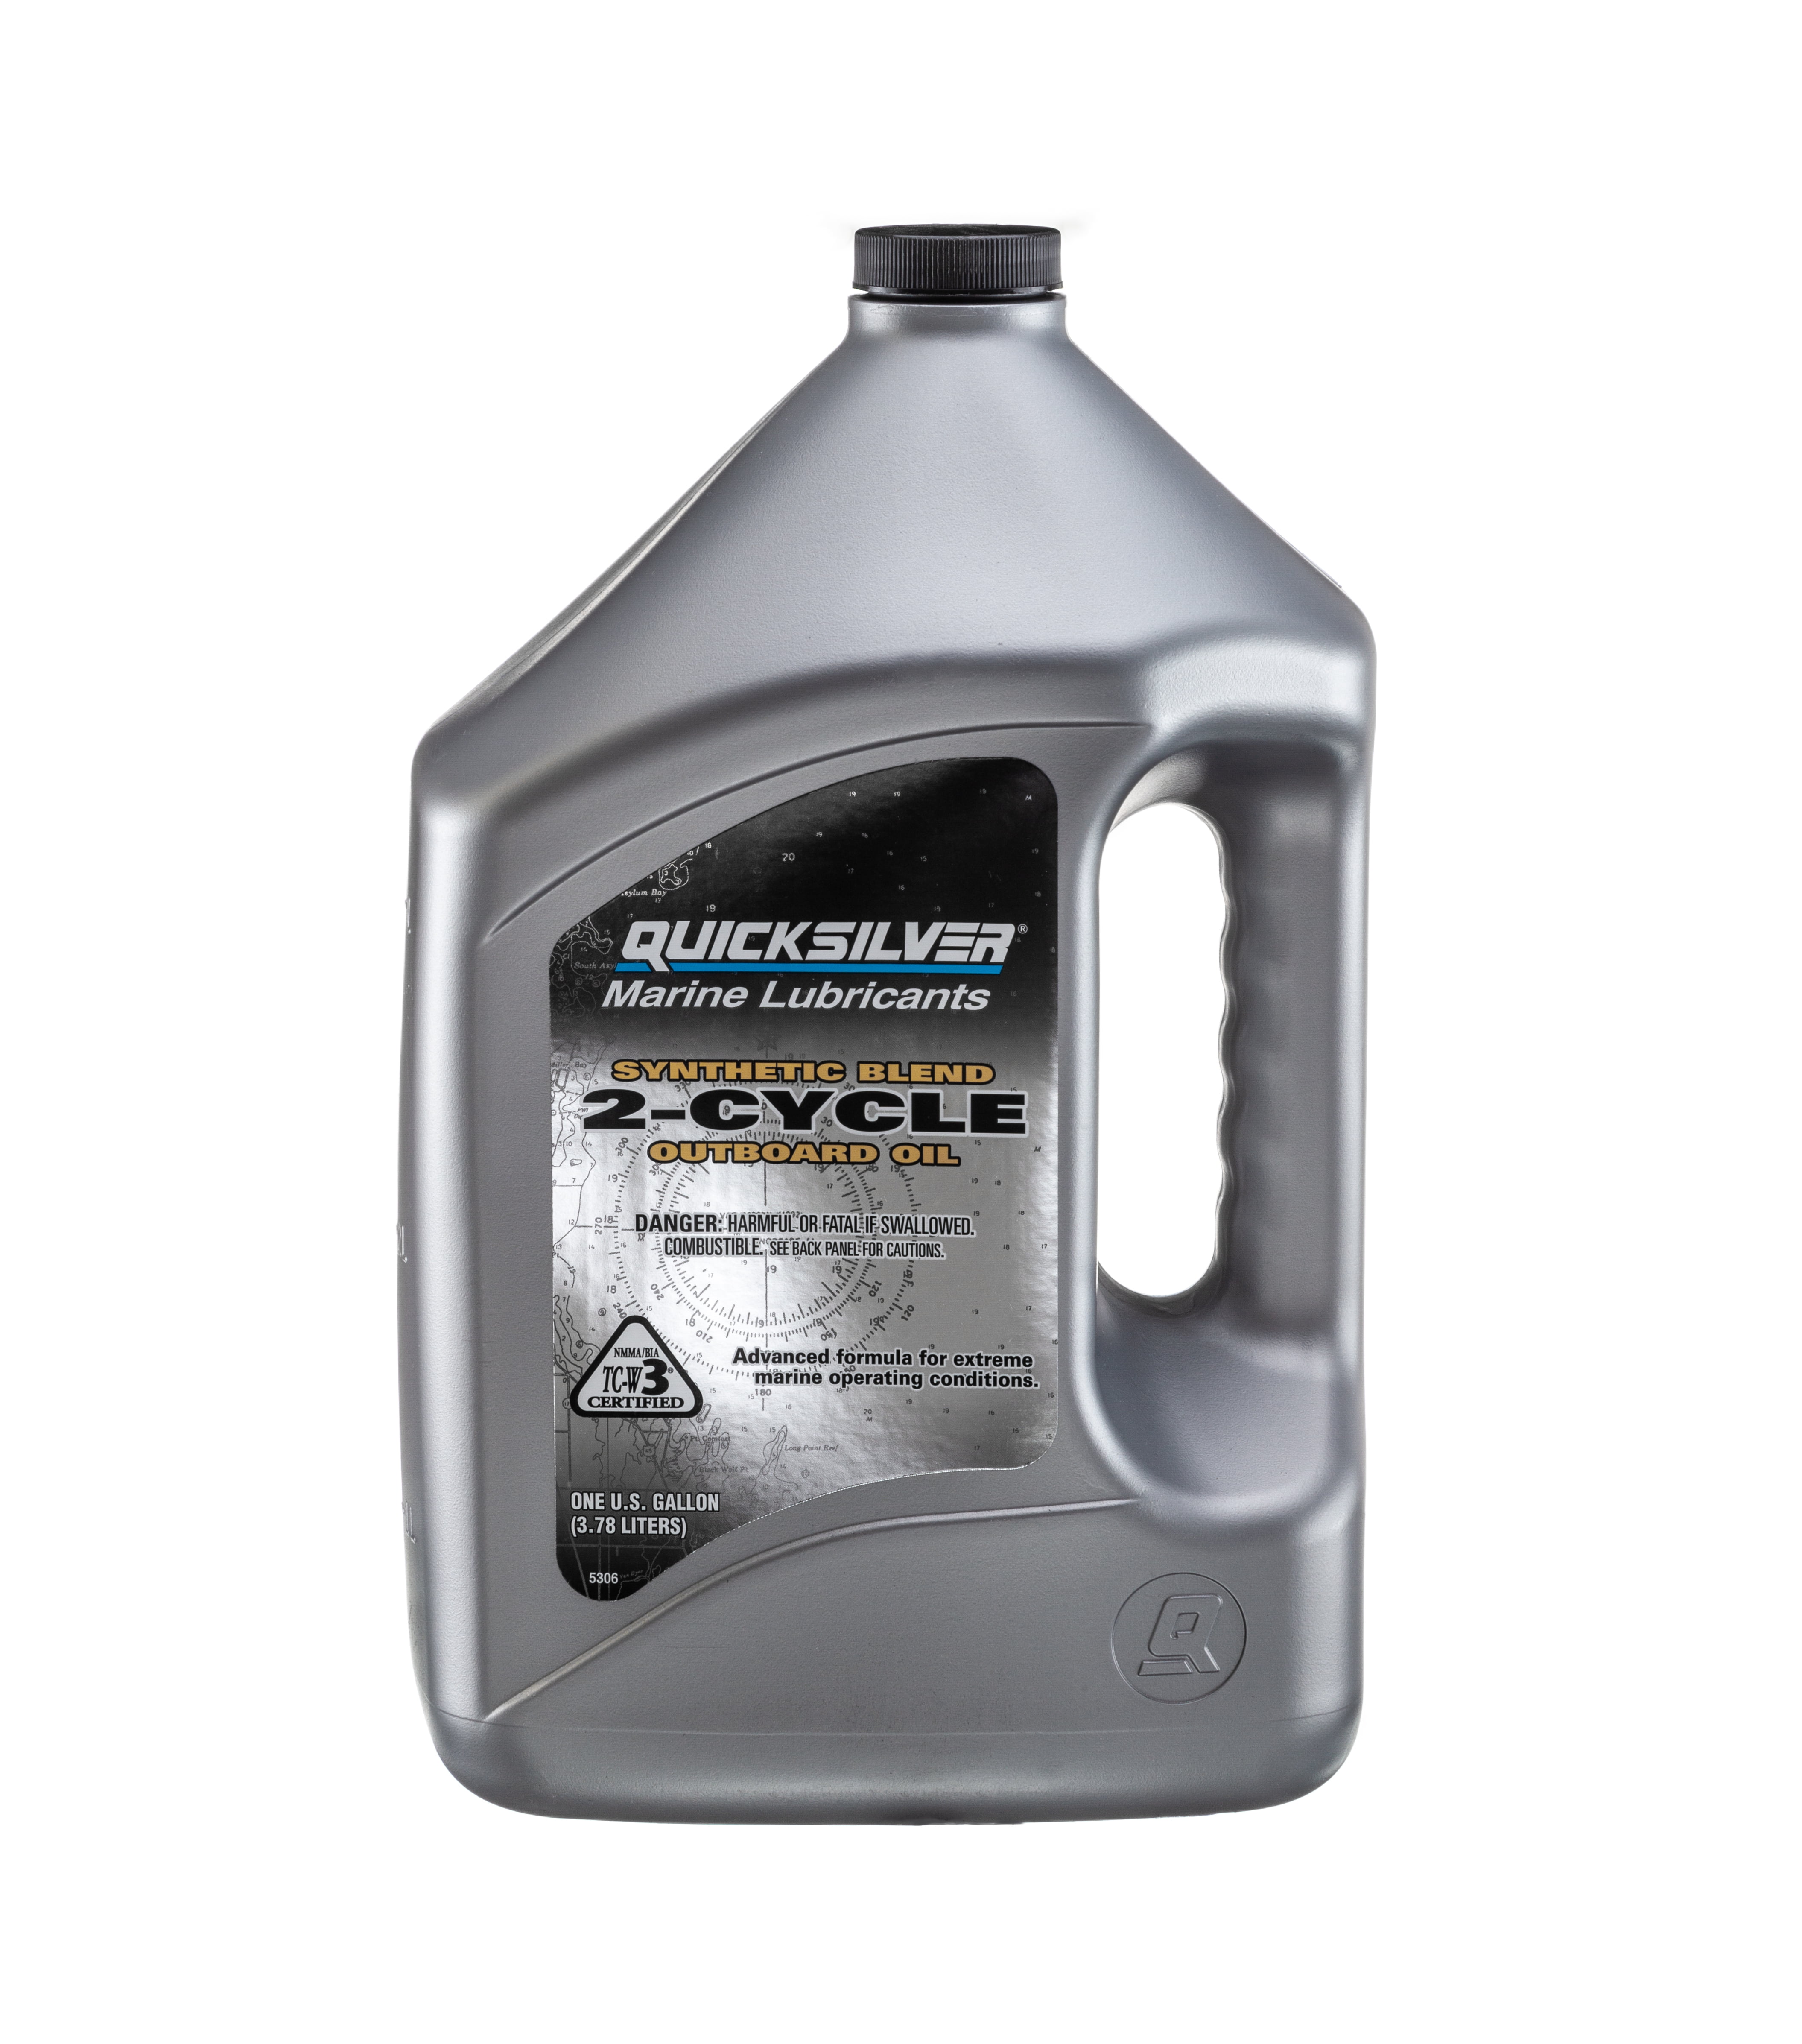 Quicksilver Premium Plus 2-Stroke Synthetic Blend Marine Oil - 1 Gallon